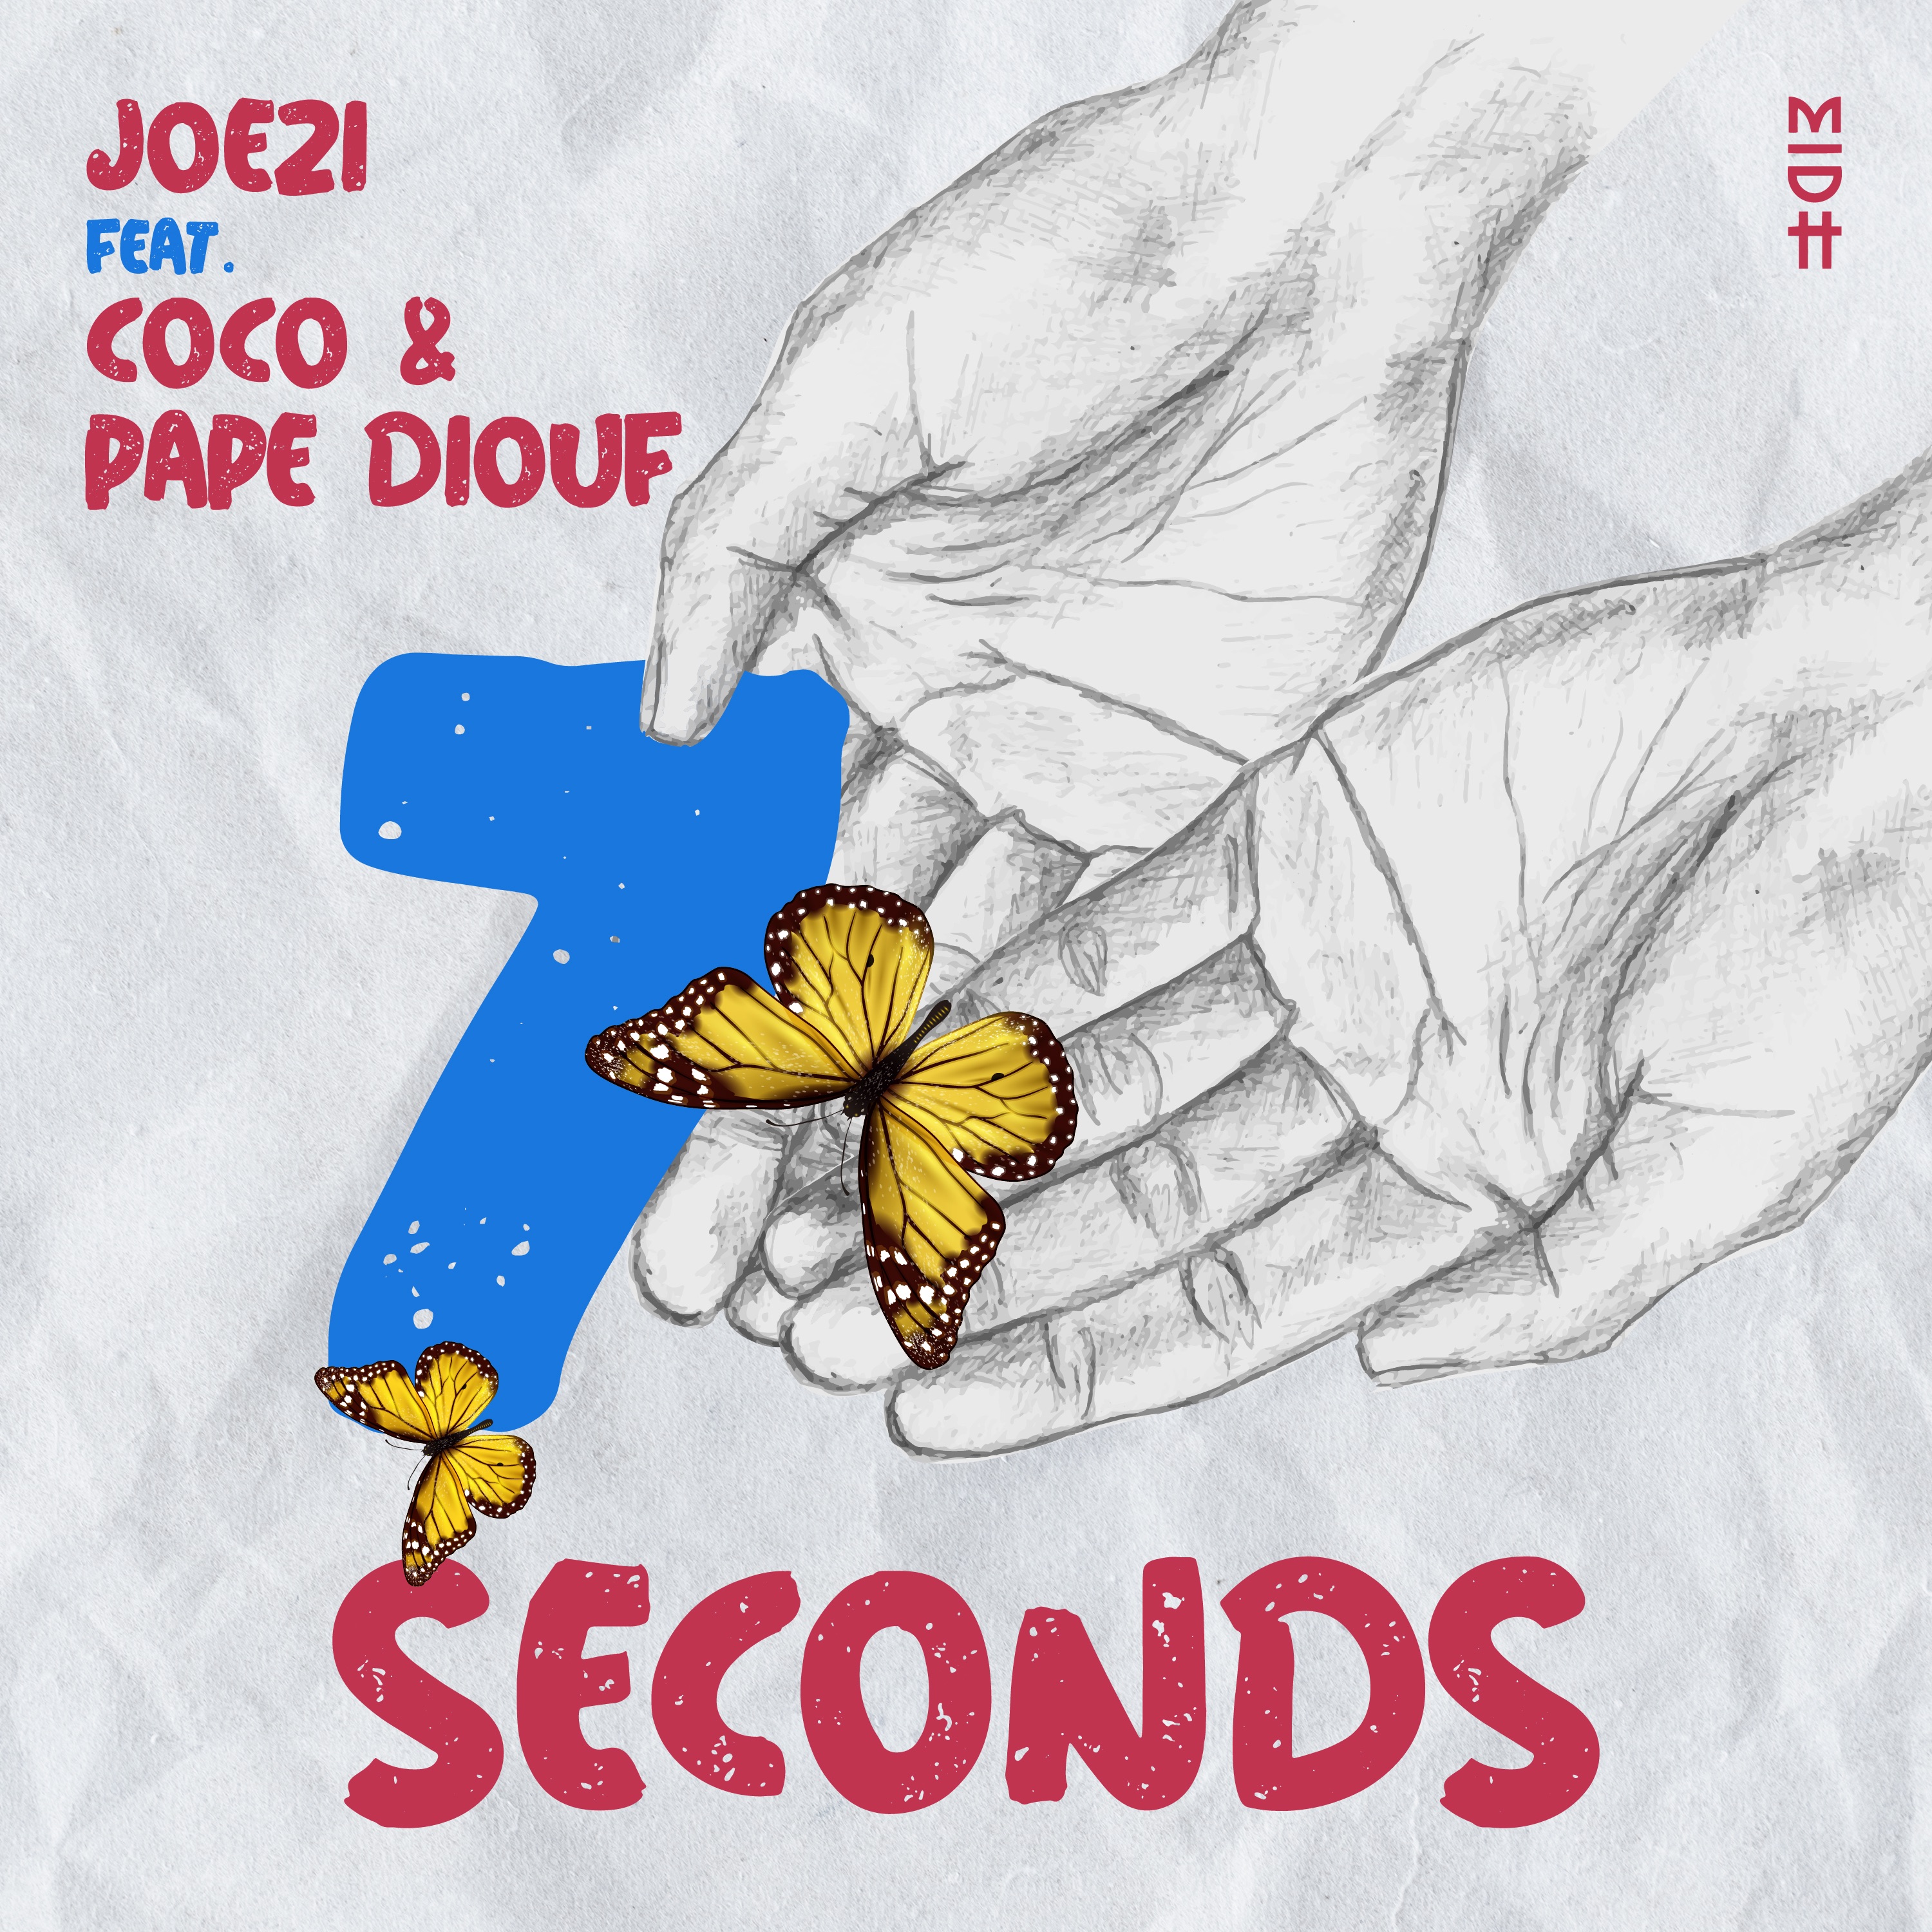 Joezi amathole remix mp3. Joezi Coco. Coco, joezi, Pape Diouf - 7 seconds (Original Mix). Постеры 1994 7seconds Jeat Coco&Pape Diouf. Coco 7 seconds обложка.